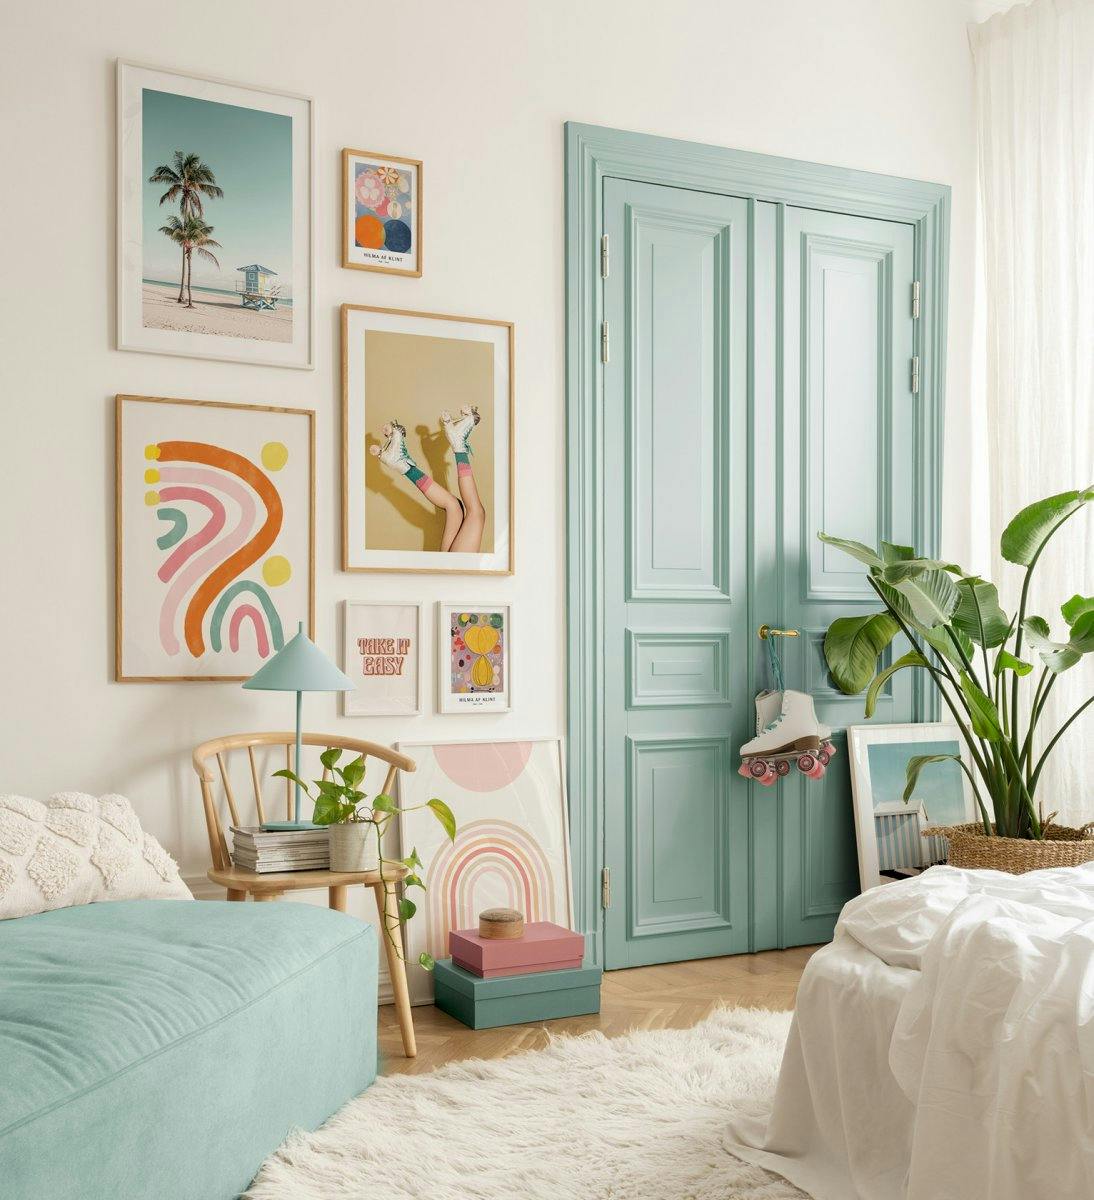 Fotografie en quote posters in speelse kleuren voor retro vibes in de slaapkamer of woonkamer